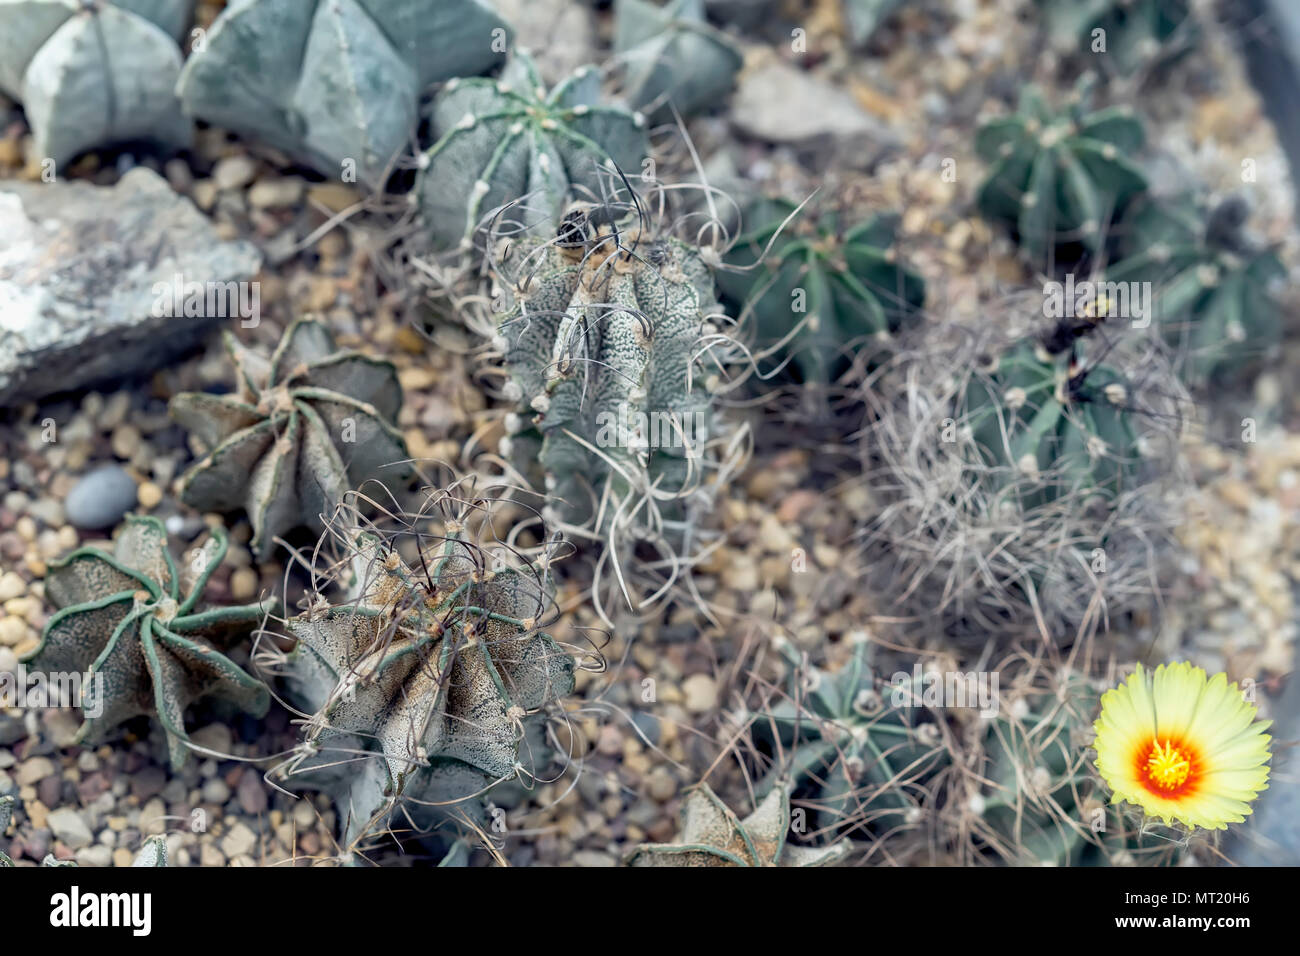 Cactus dans le sol. Arrière-plan de diverses sortes de succulentes. Un cactus à fleurs naturelles, fleurs jaunes. L'arrière-plan botanique exotique moderne Banque D'Images